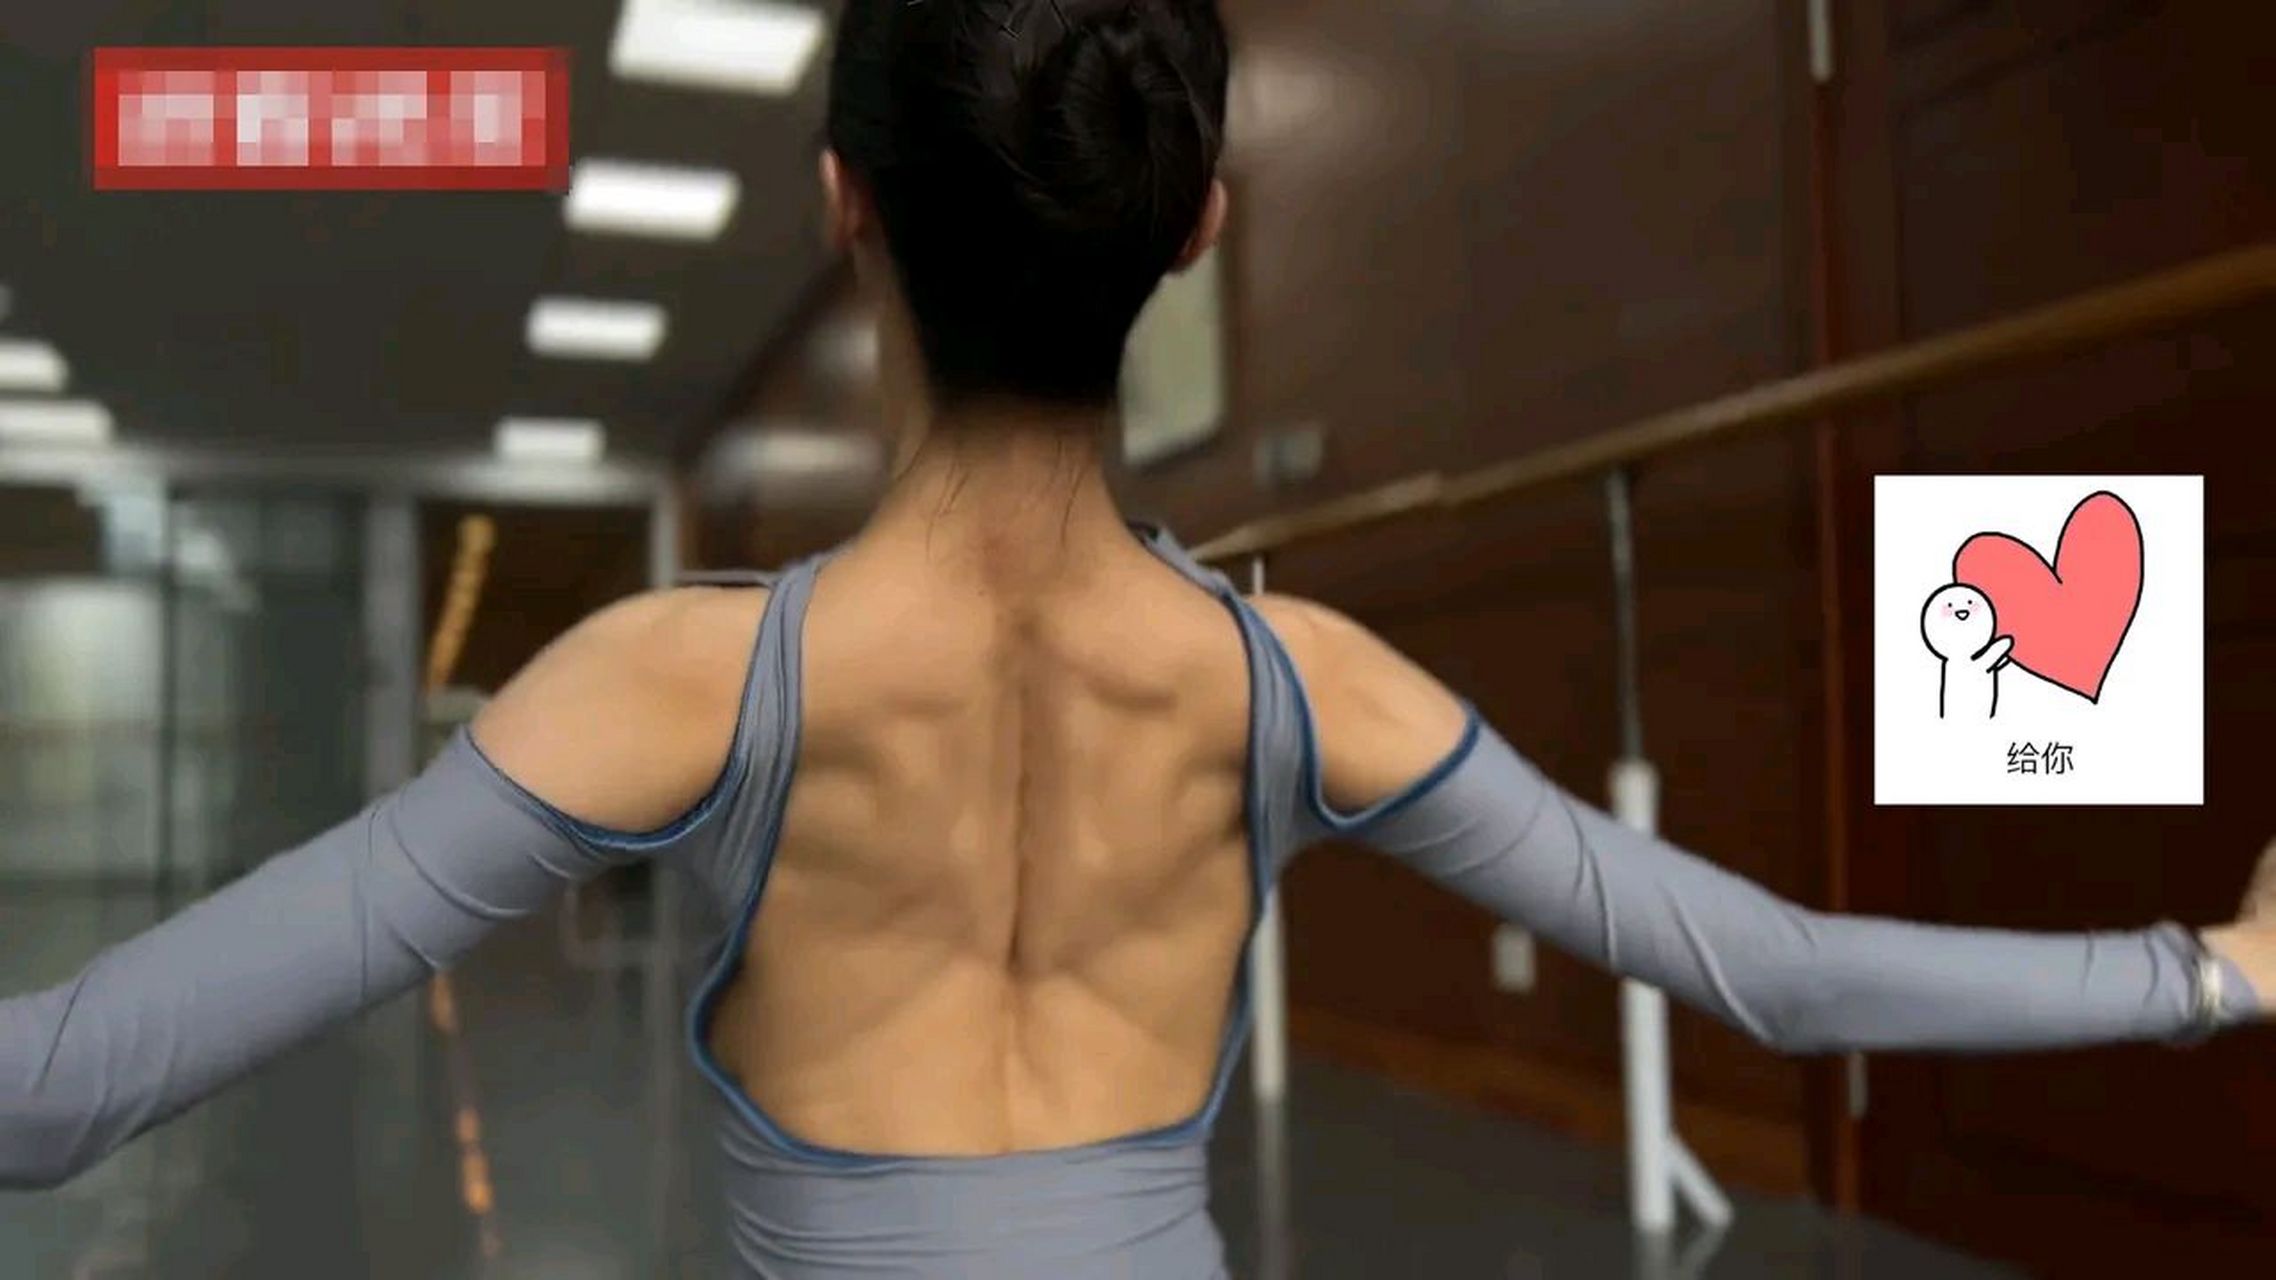 芭蕾舞女演员,展示后背肌肉,骨感与肌肉并存如展翅蝴蝶,就问你,服吗?